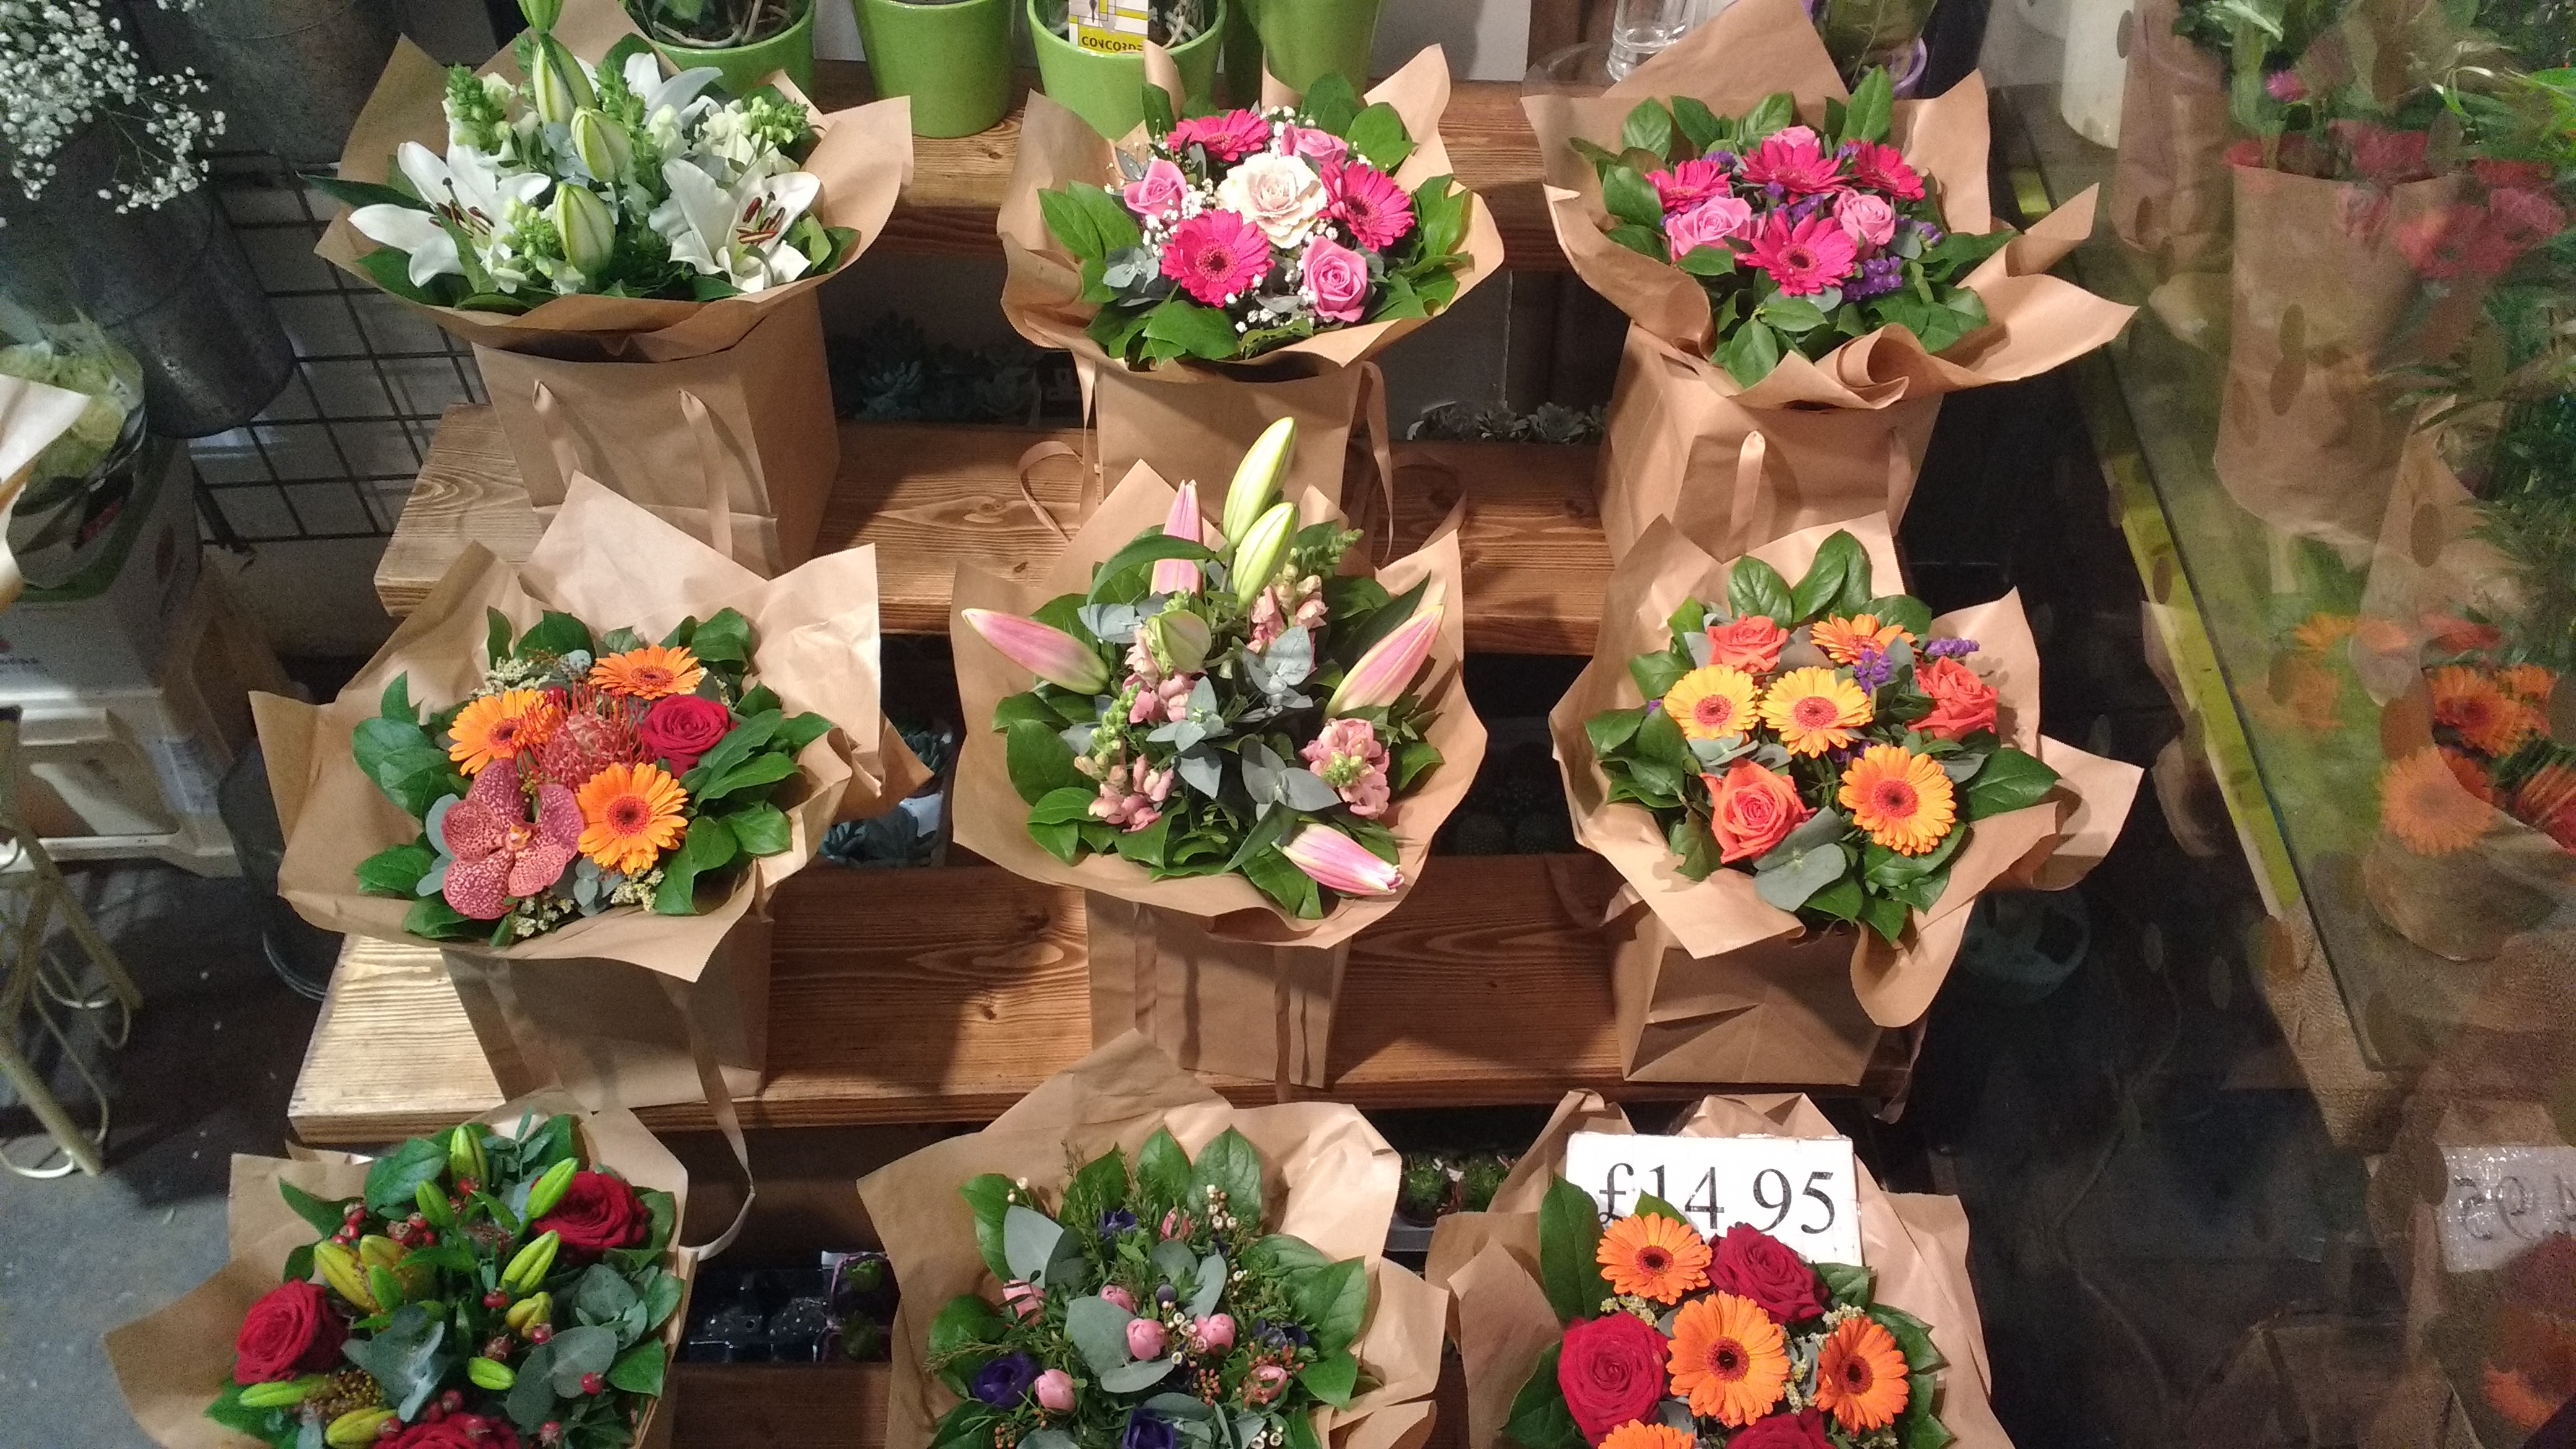 £15 bouquet, bunch of flowers. London Florist Shop EC1Y 1BE